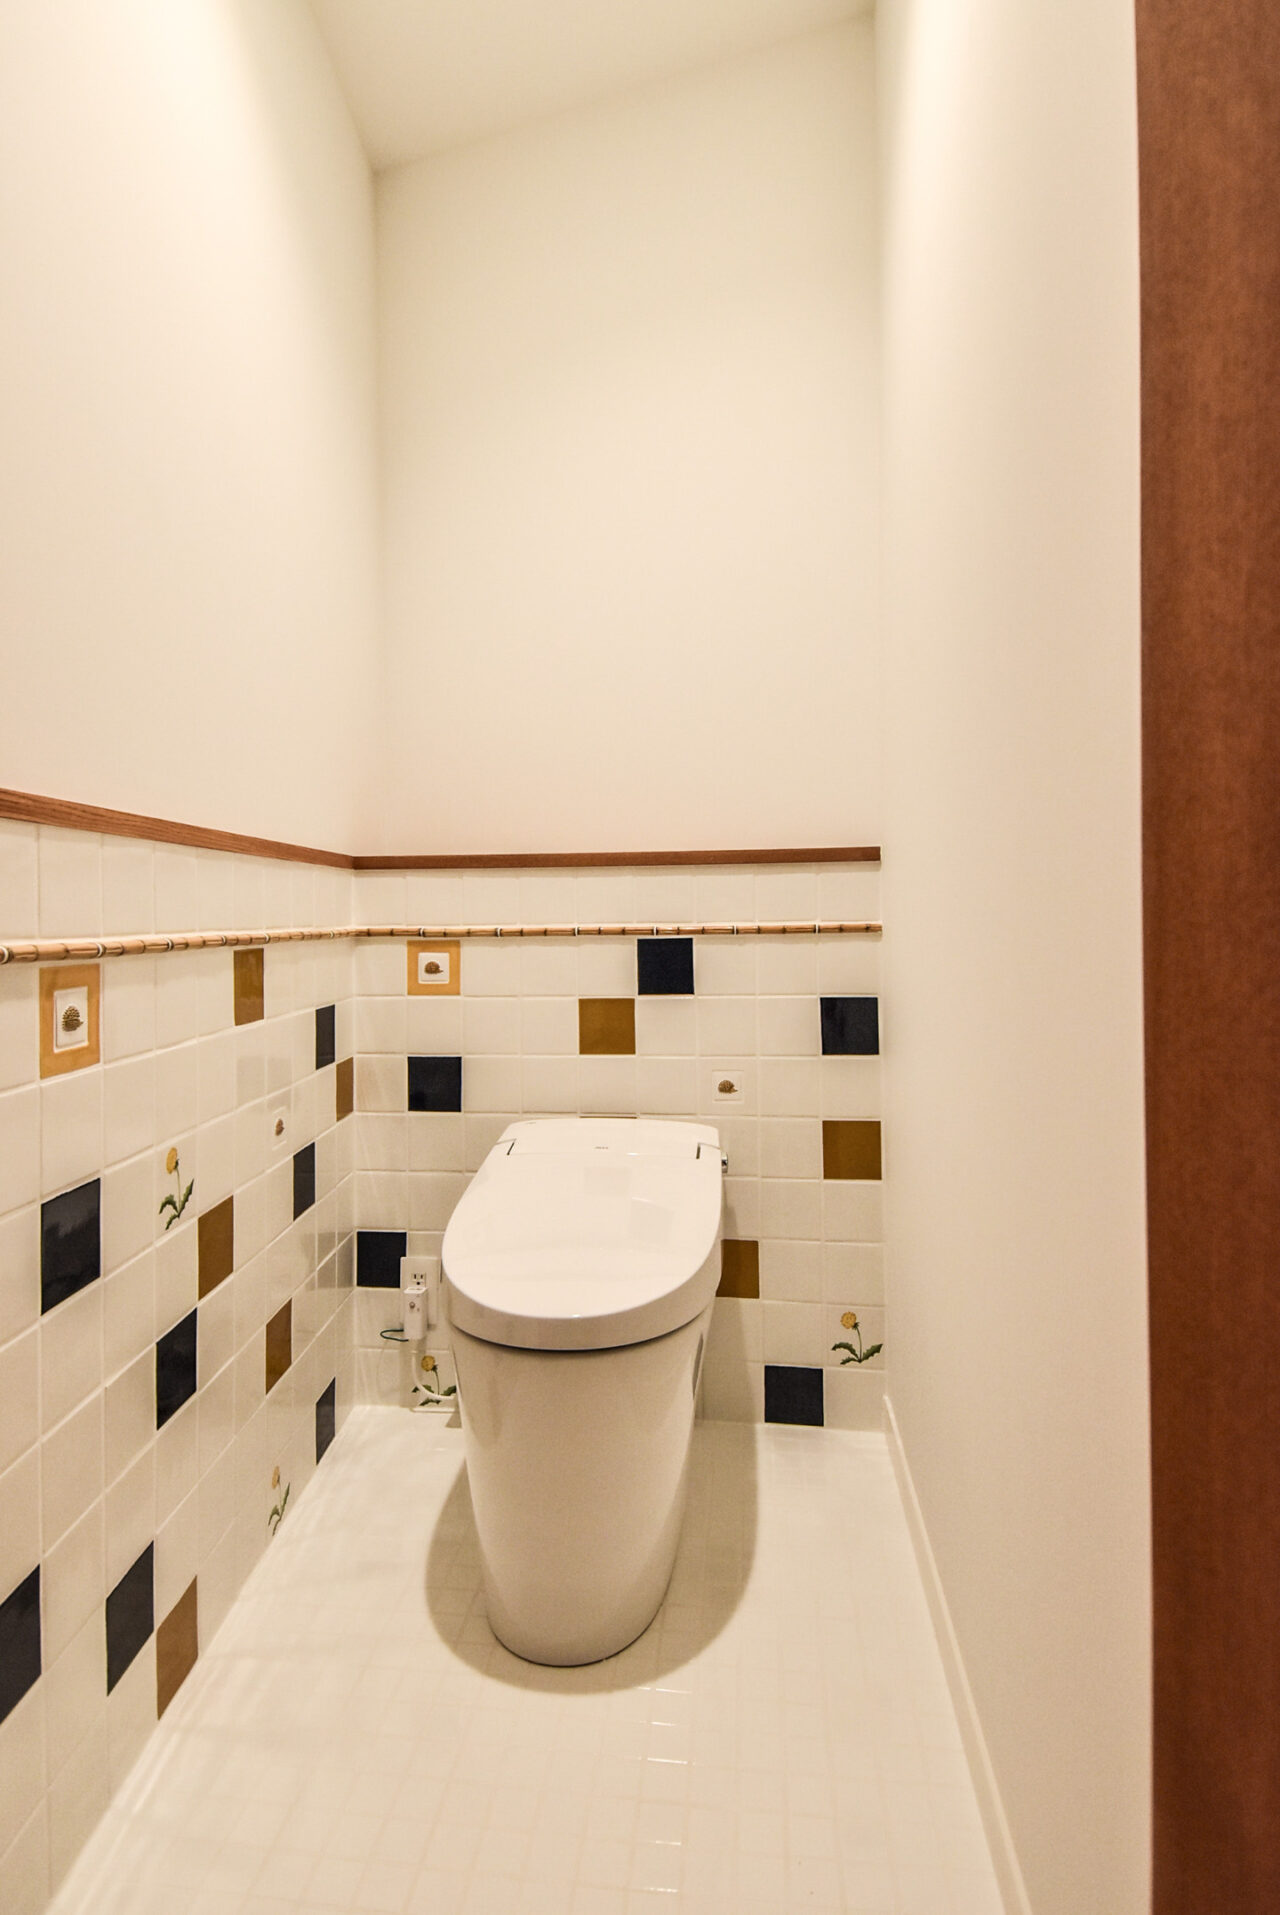 床と腰壁のタイルが特徴的なトイレ